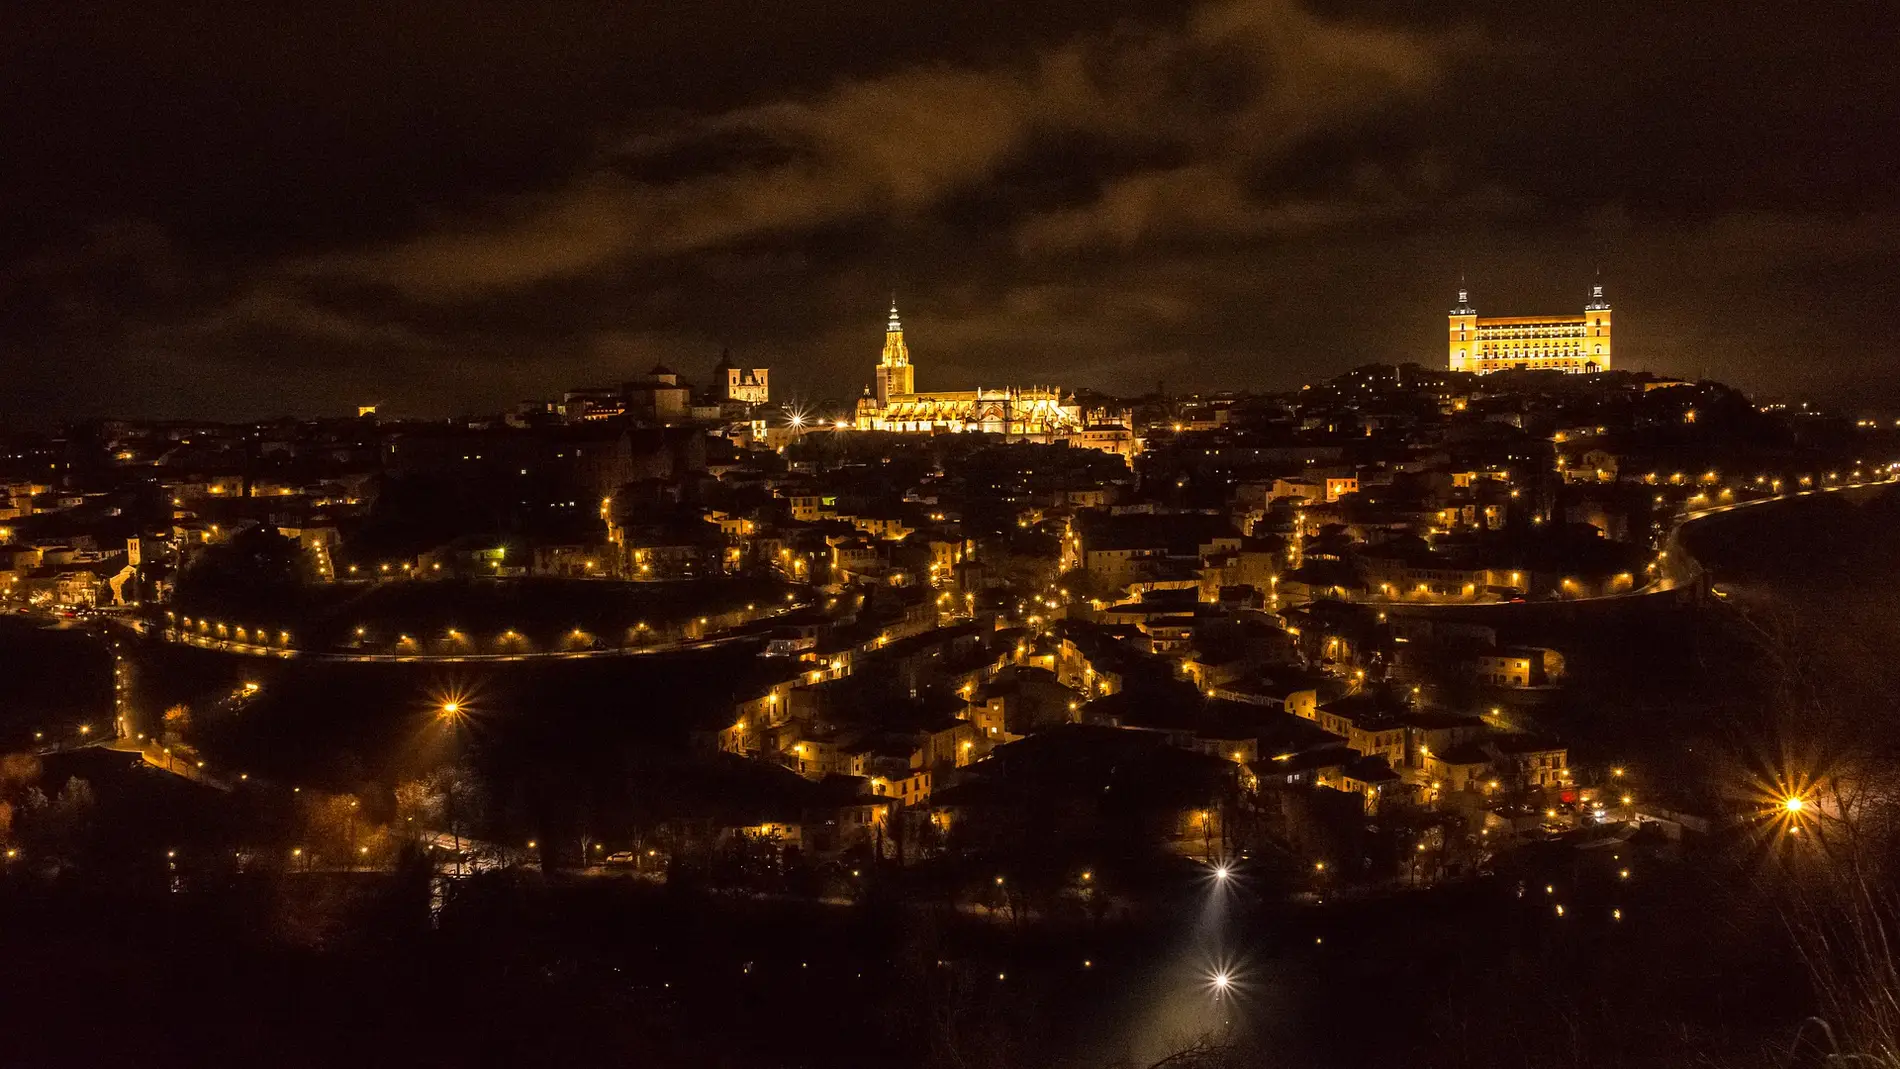 Contribuyente Movilizar compresión Toledo, elegida como la mejor panorámica nocturna del mundo